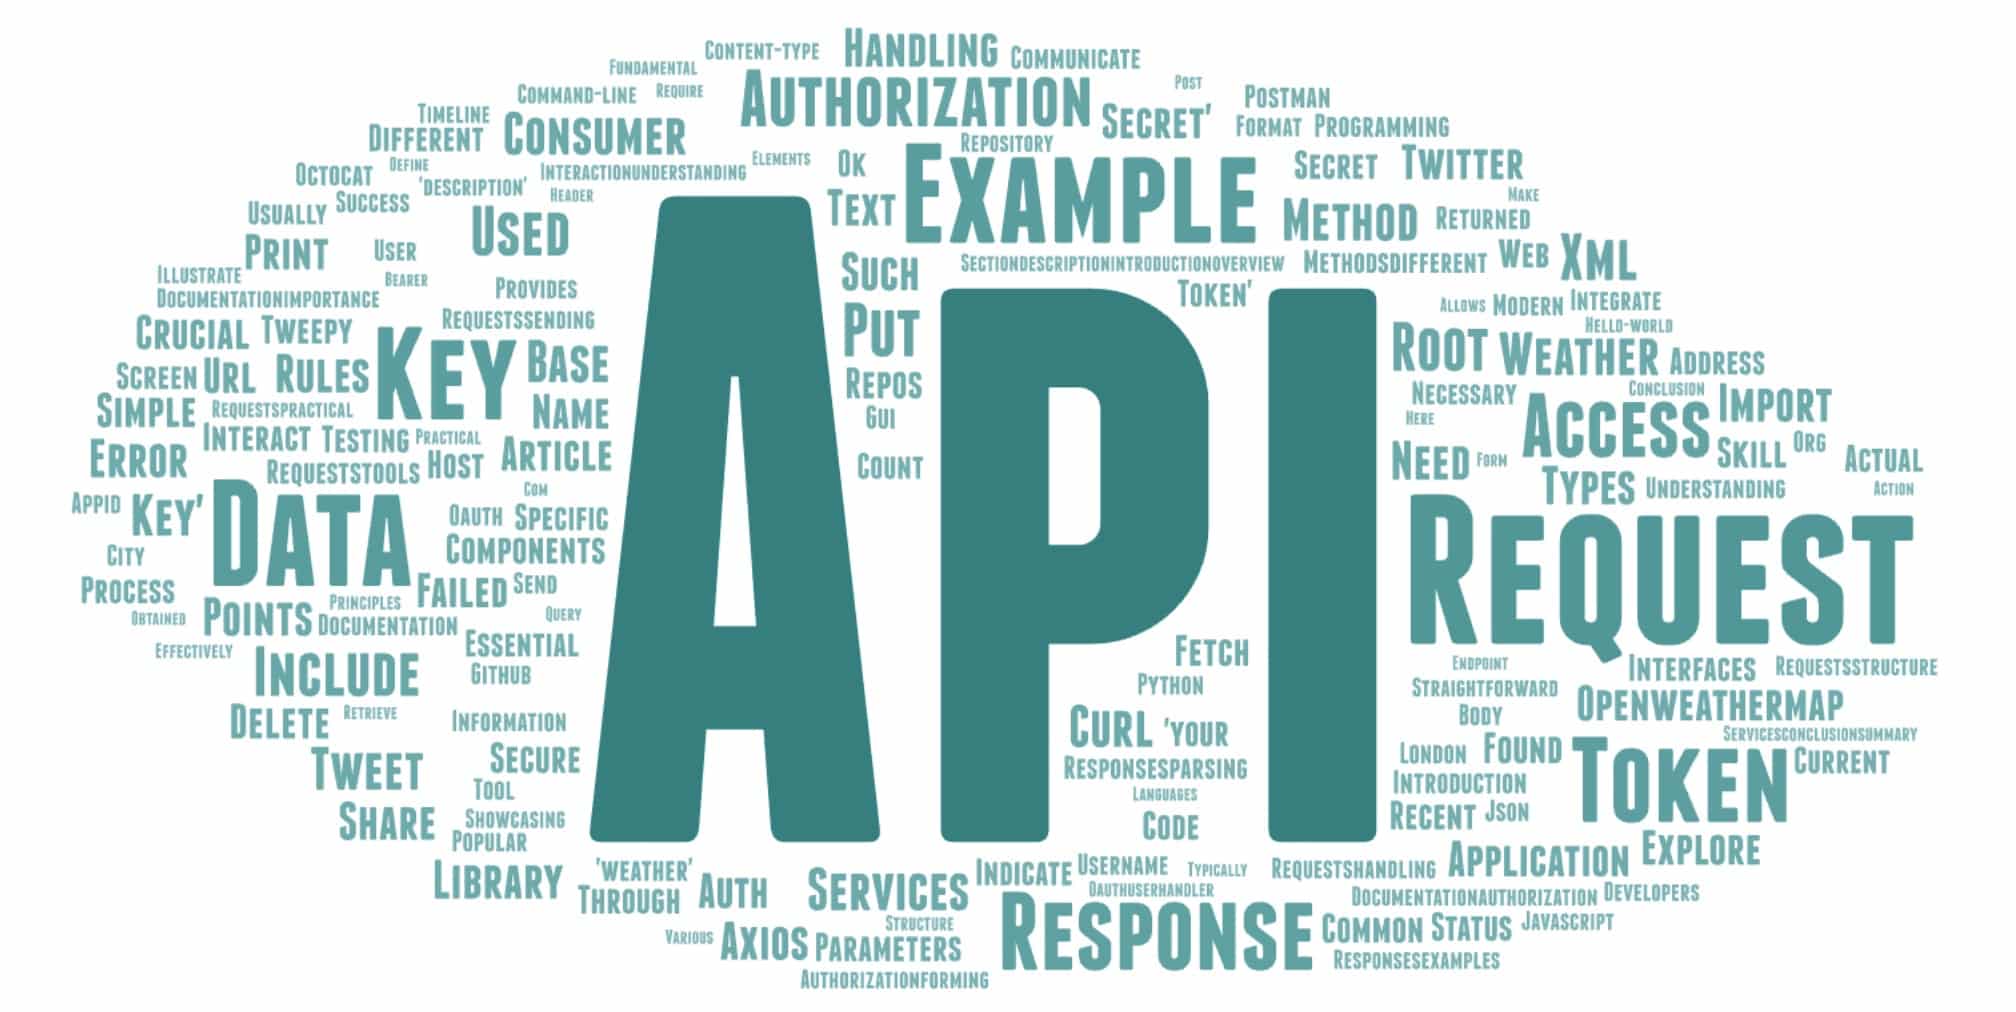 ¿Cómo interactuar con servicios web a través de la API?